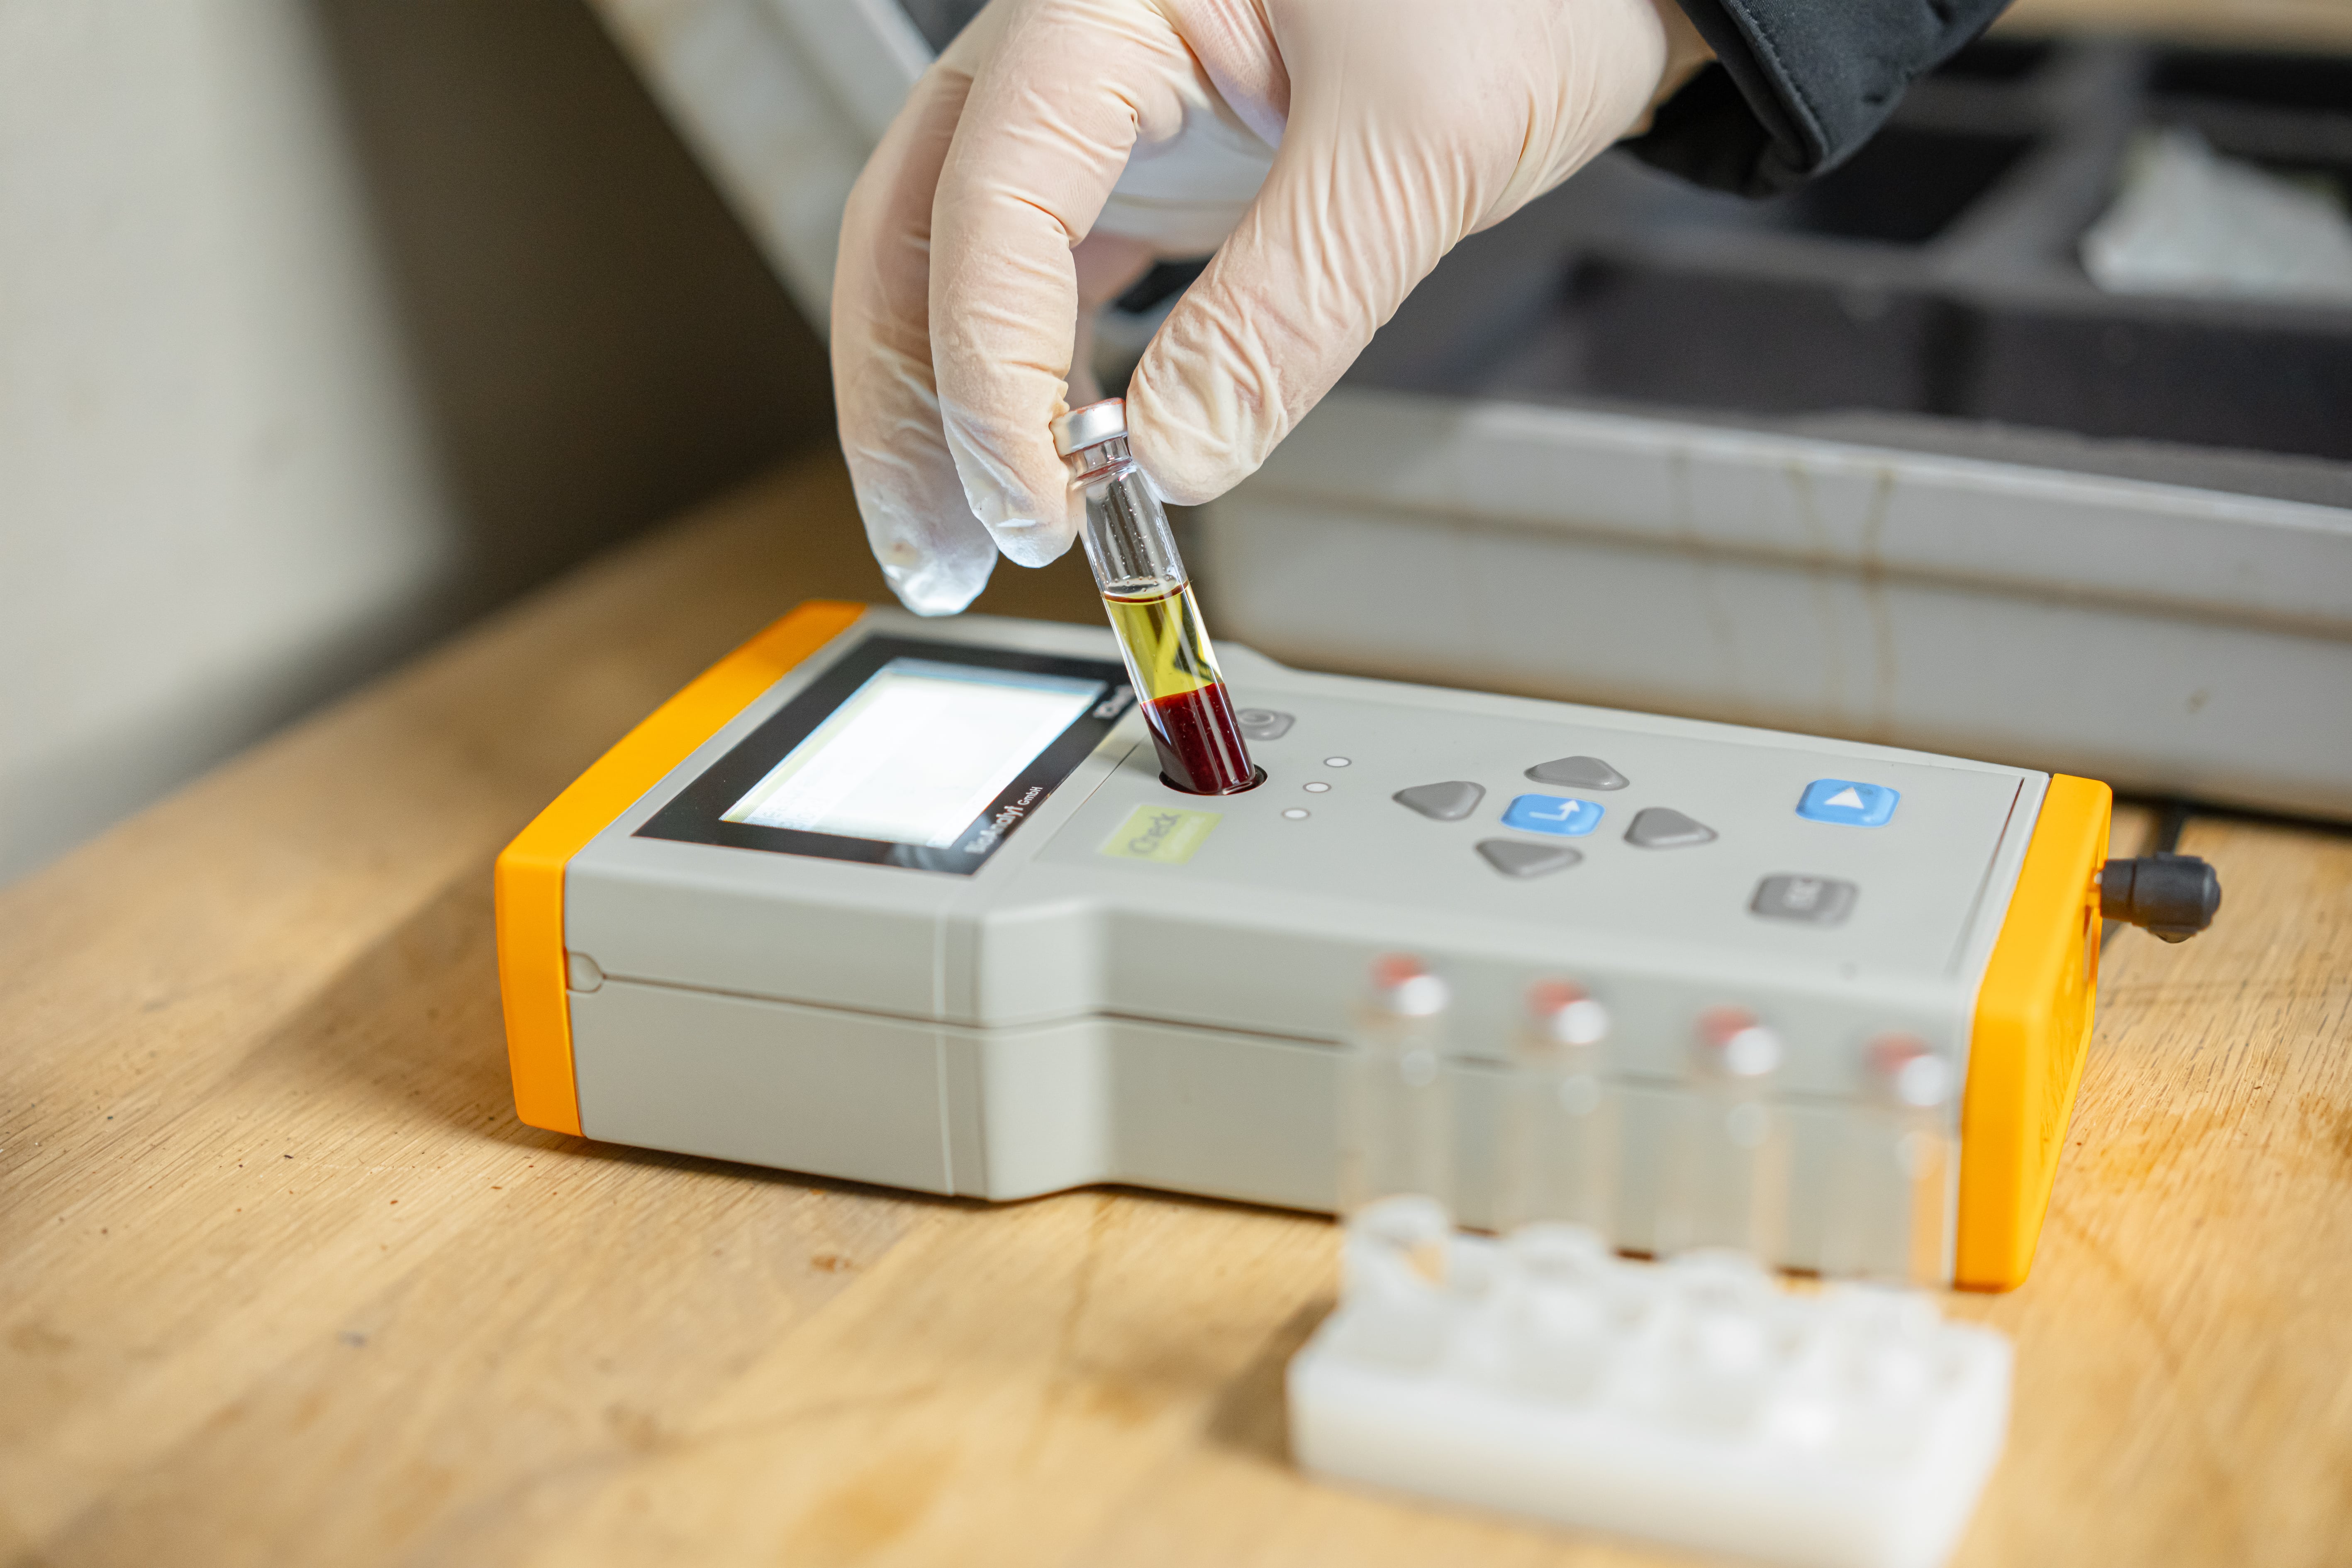 Blutprobenanalyse mit elektronischen Messgerät